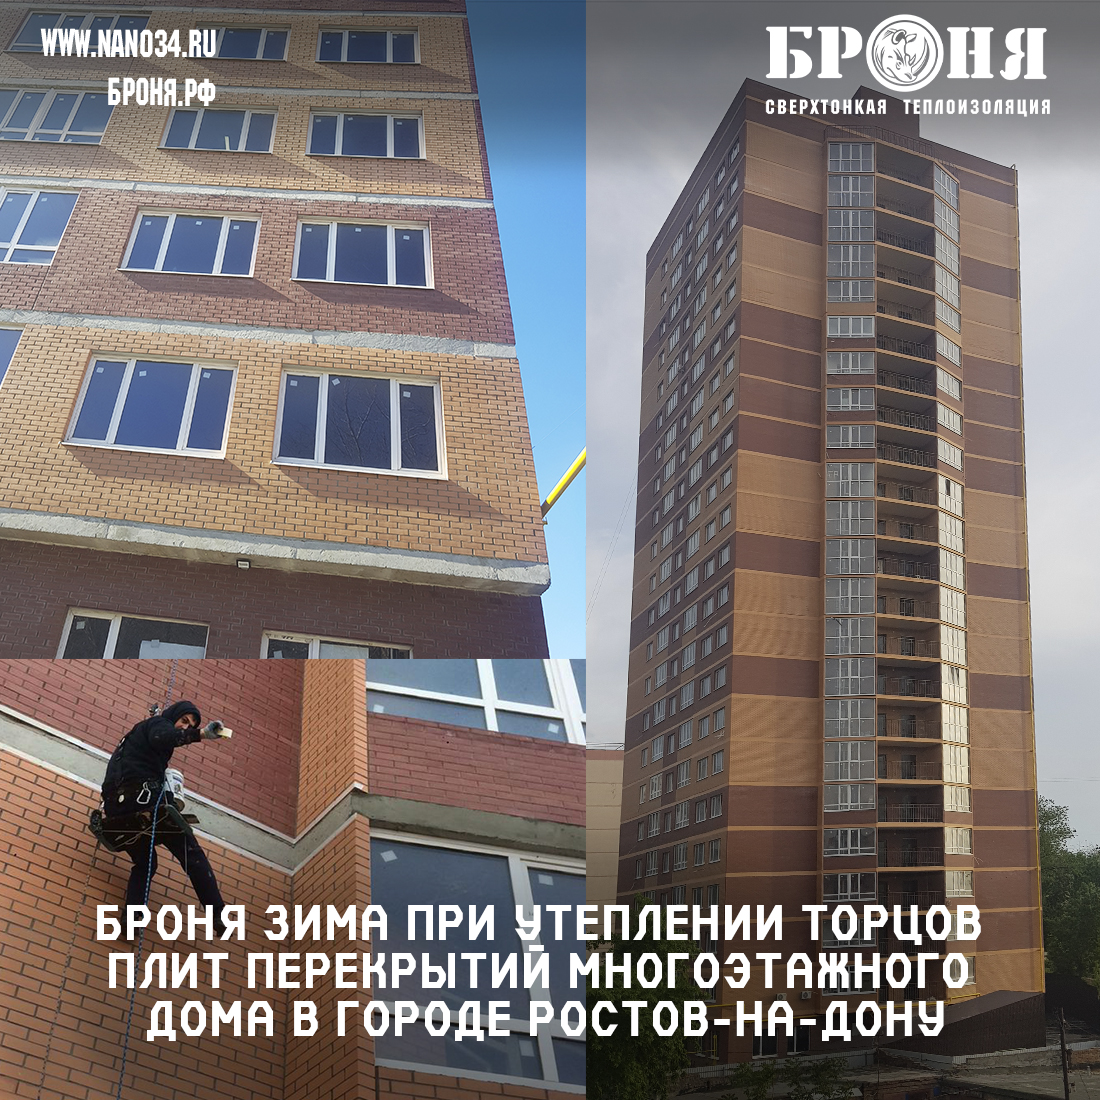 Броня Зима при утеплении торцов плит перекрытий многоэтажного дома в городе Ростов-на-Дону (фото)